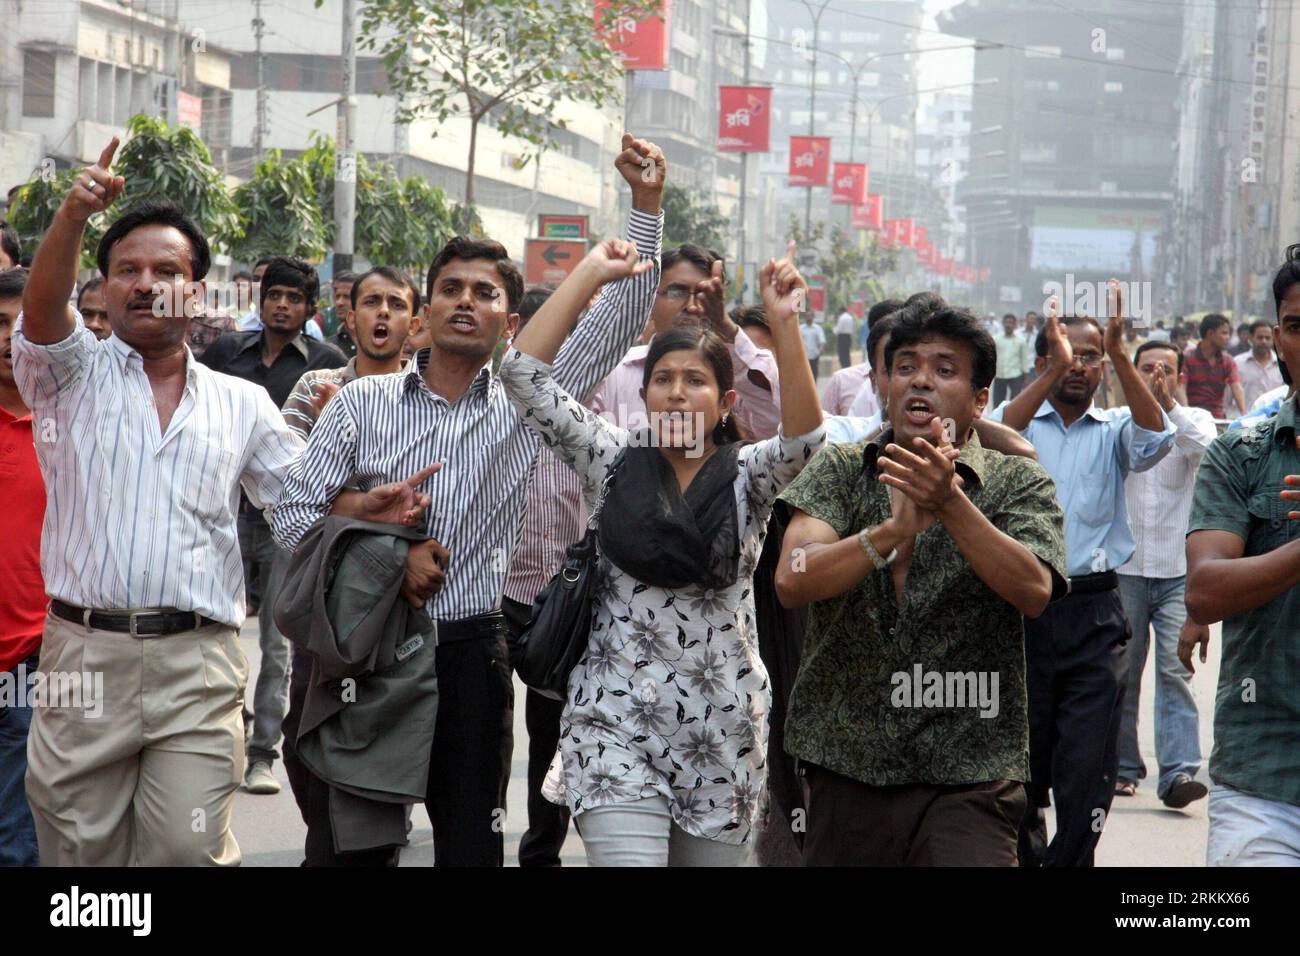 Bildnummer: 56284401 Datum: 15.11.2011 Copyright: imago/Xinhua (111115) -- DHAKA, 15. November 2011 (Xinhua) -- Demonstranten singen Parolen vor der Dhaka-Börse (DSE) in der bangladeschischen Hauptstadt Dhaka, 15. November 2011. Eine Gruppe kleiner Aktieninvestoren setzte ihre Demonstration in der Hauptstadt Dhaka am Dienstag fort und protestierte gegen einen steilen Kursrückgang. (Xinhua/Shariful Islam) (nxl) BANGLADESCH-DHAKA-STOCK-FALL-DEMONSTRATION PUBLICATIONxNOTxINxCHN Wirtschaft Börse Demo Protest x0x xtm 2011 quer 56284401 Datum 15 11 2011 Copyright Imago XINHUA Dhaka 15. November 2011 XINHUA Demonstrator Chan Stockfoto